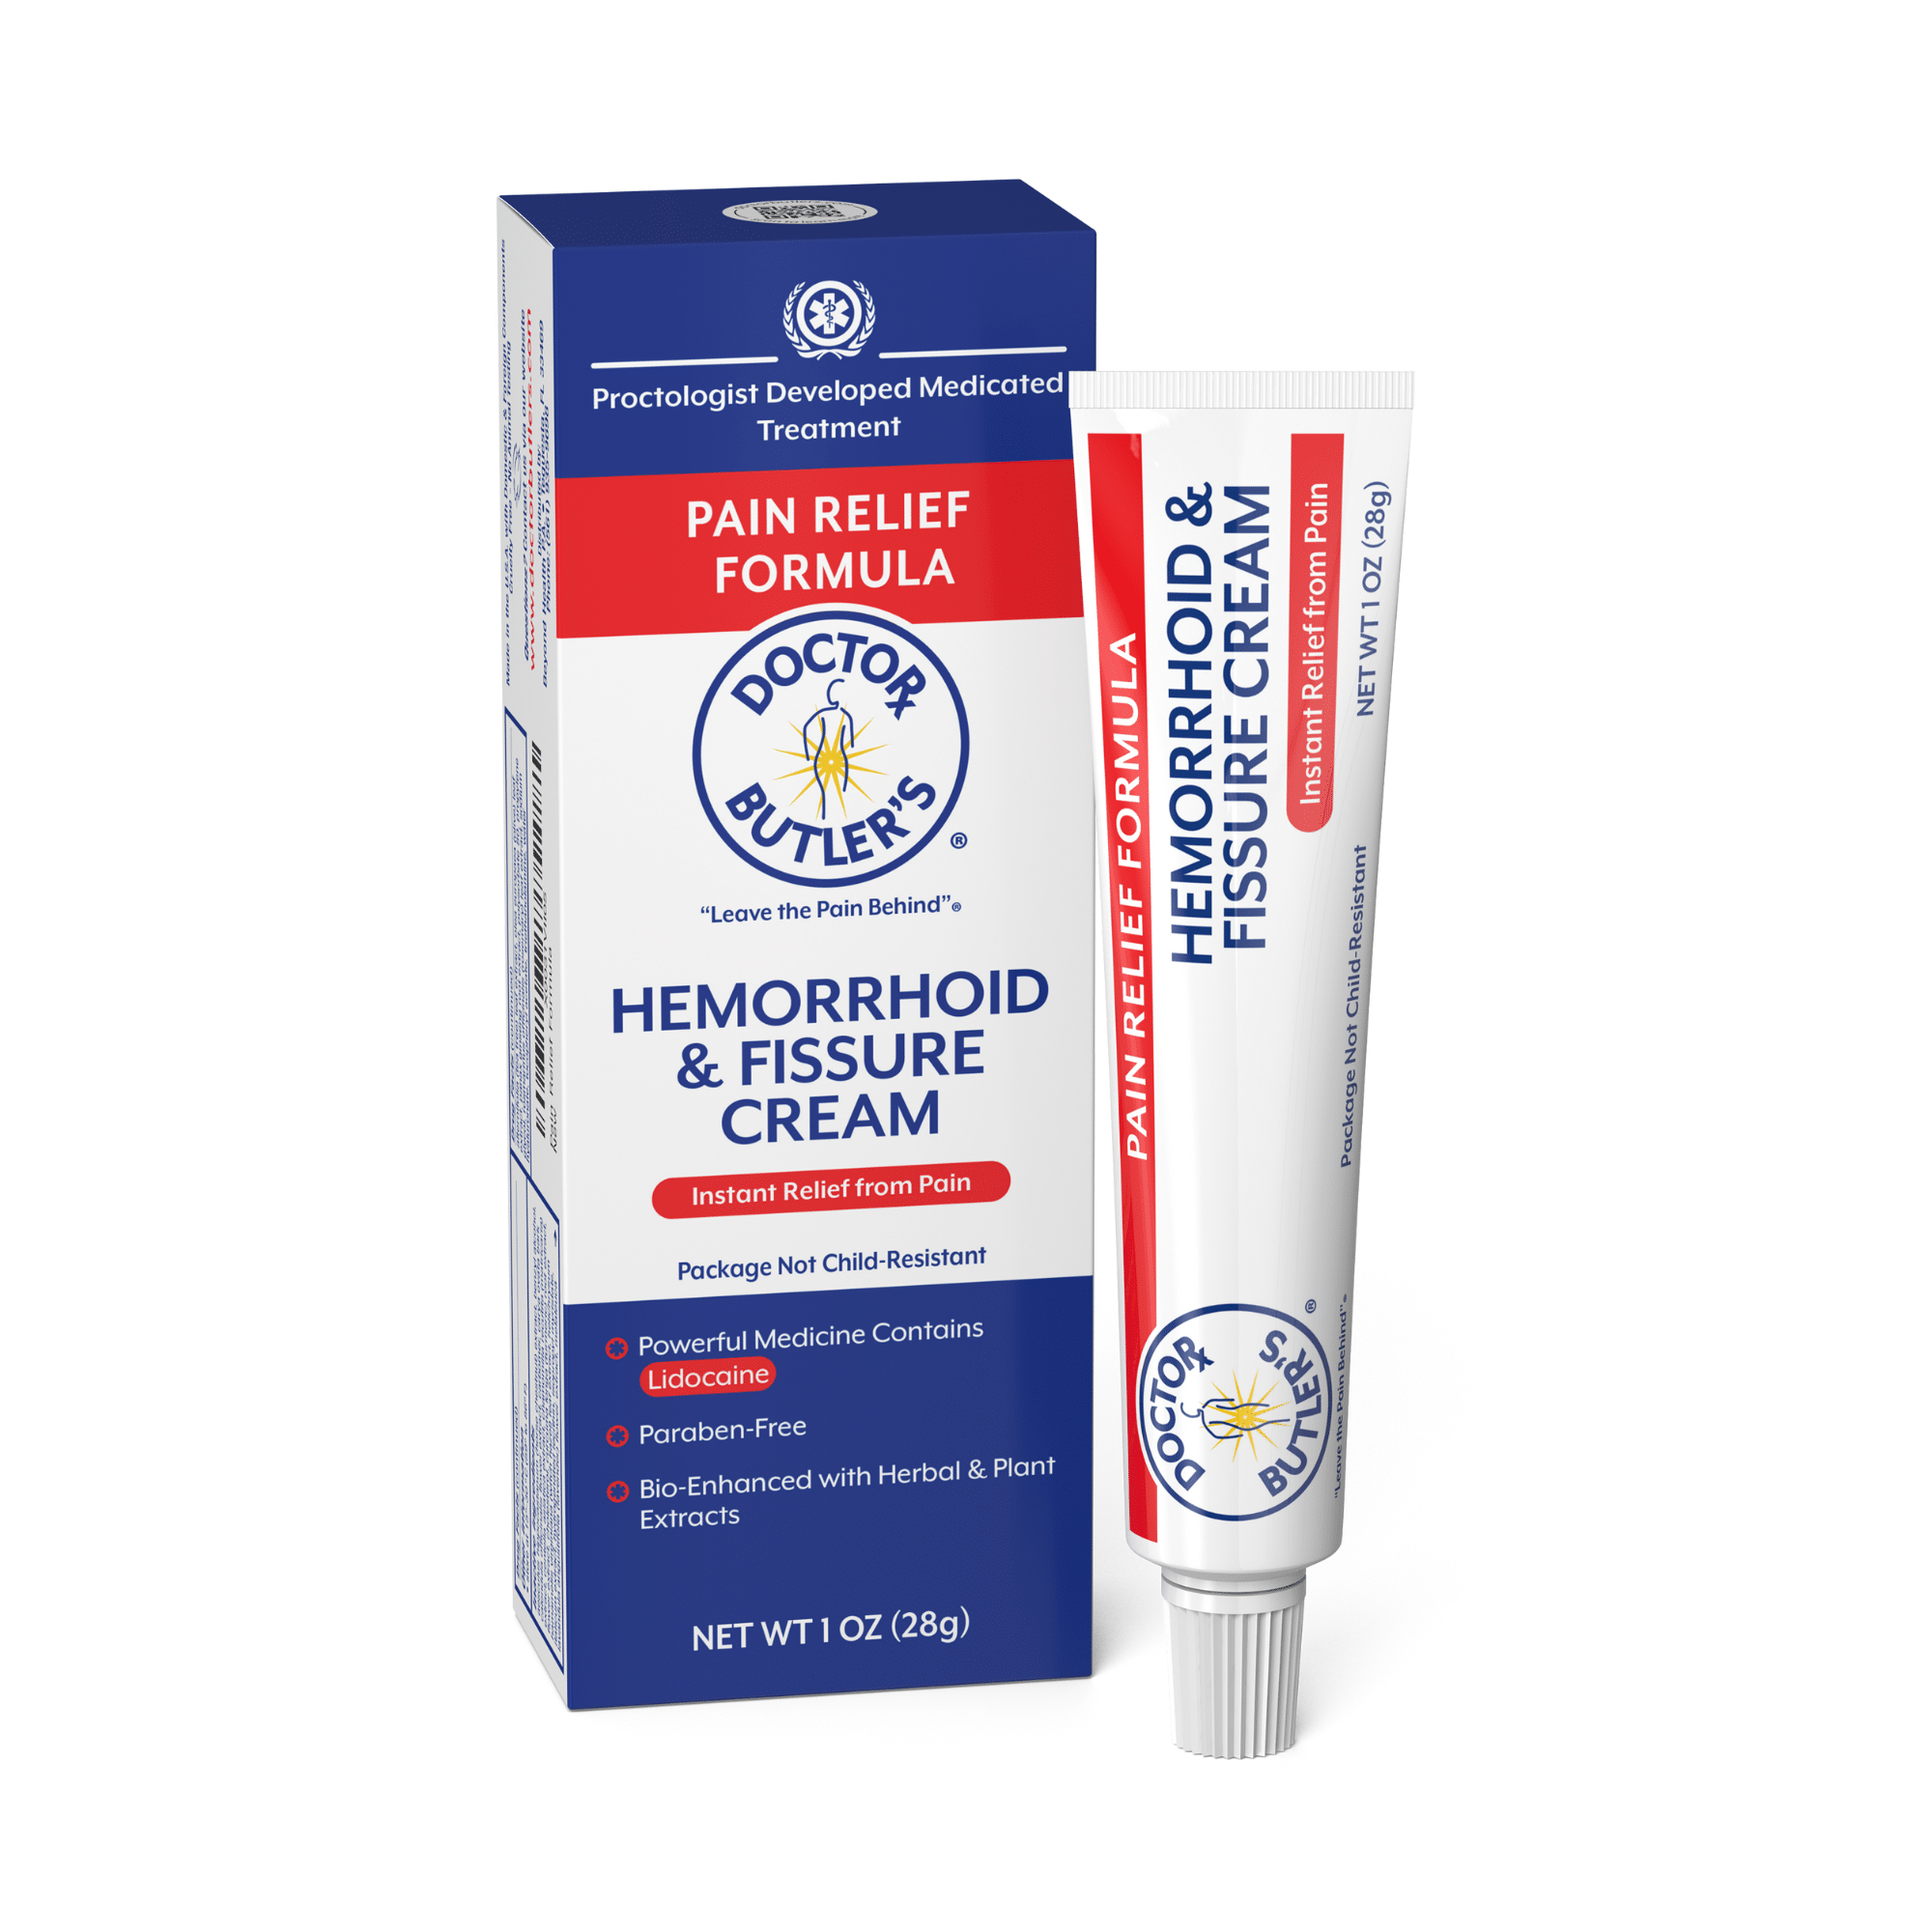 Pain Relief Formula Hemorrhoid Cream